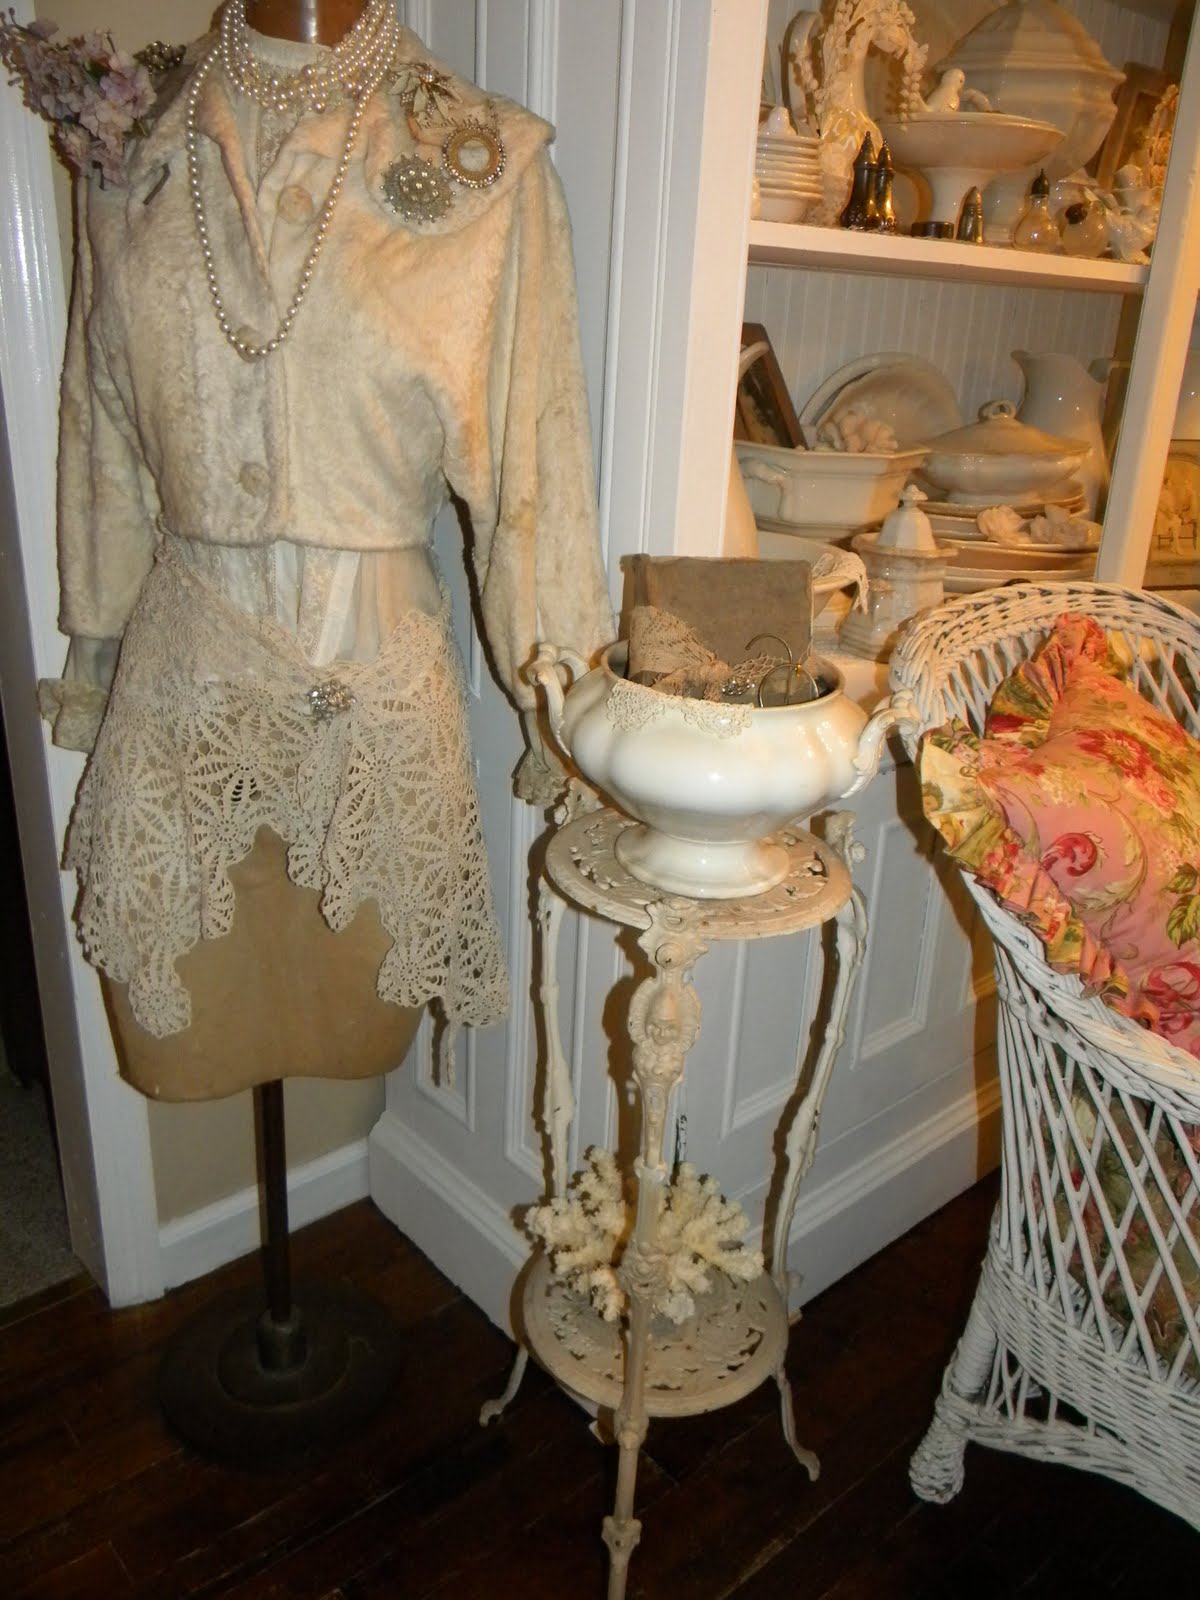 Cheryls * Cottage * Home Vintage Dress Form Mannequin For